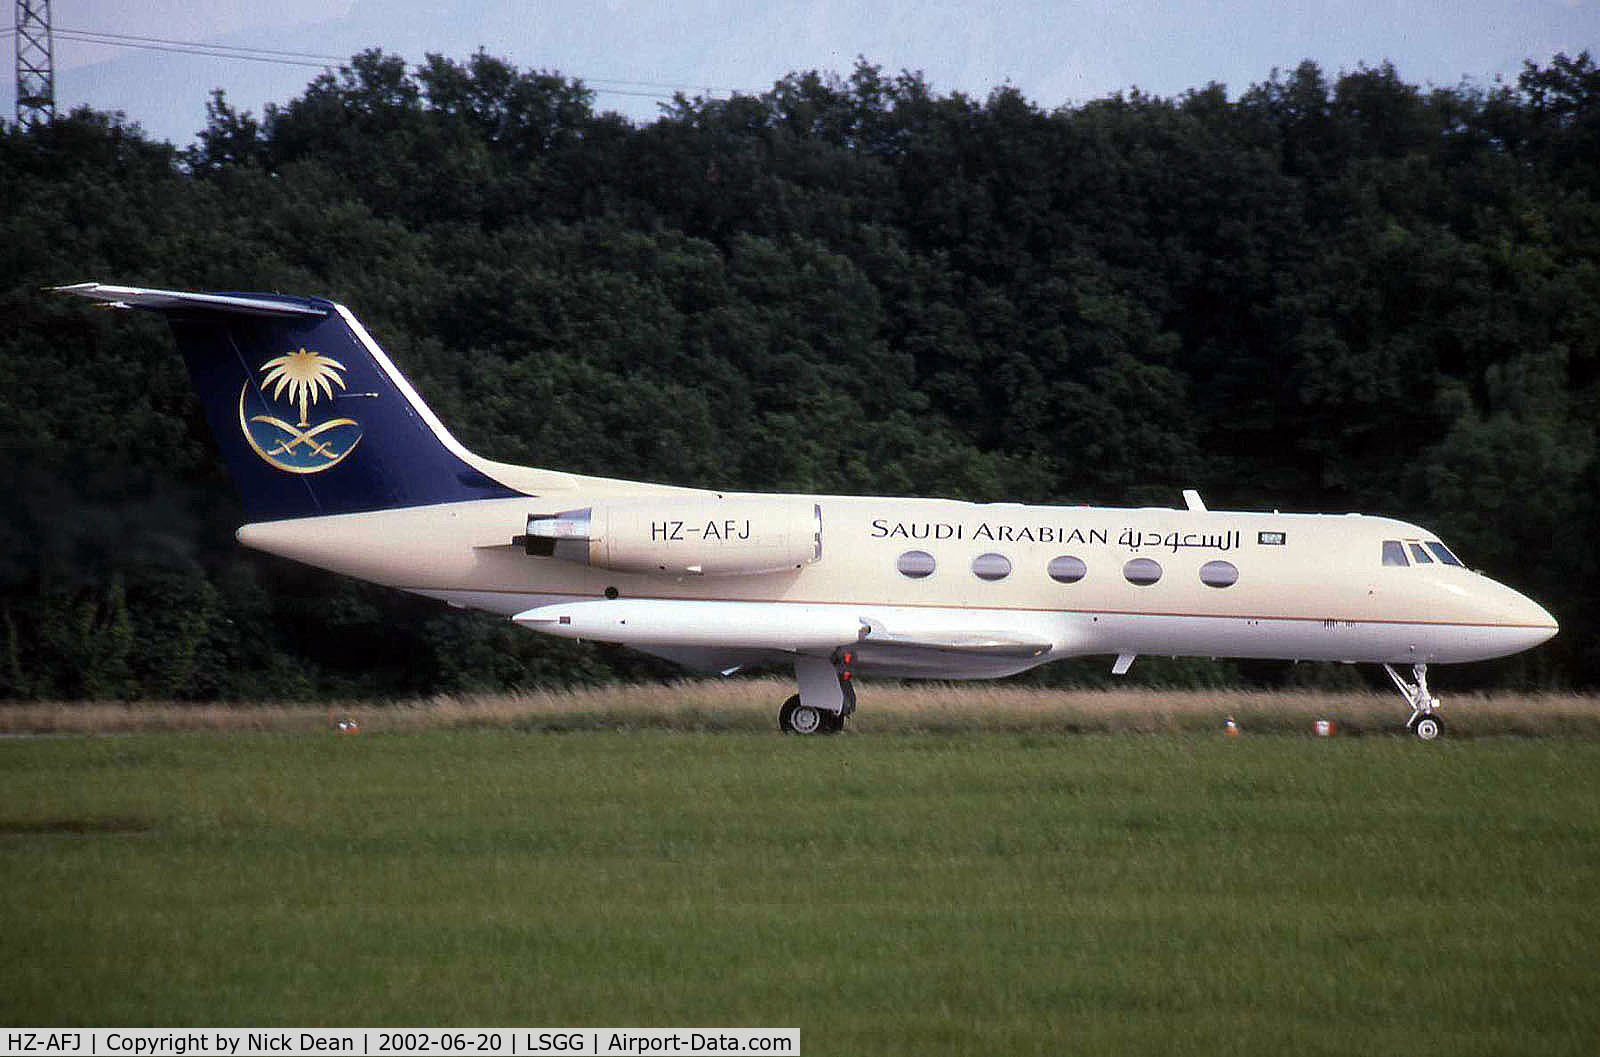 HZ-AFJ, 1977 Grumman G-1159 Gulfstream II-TT C/N 203, LSGG